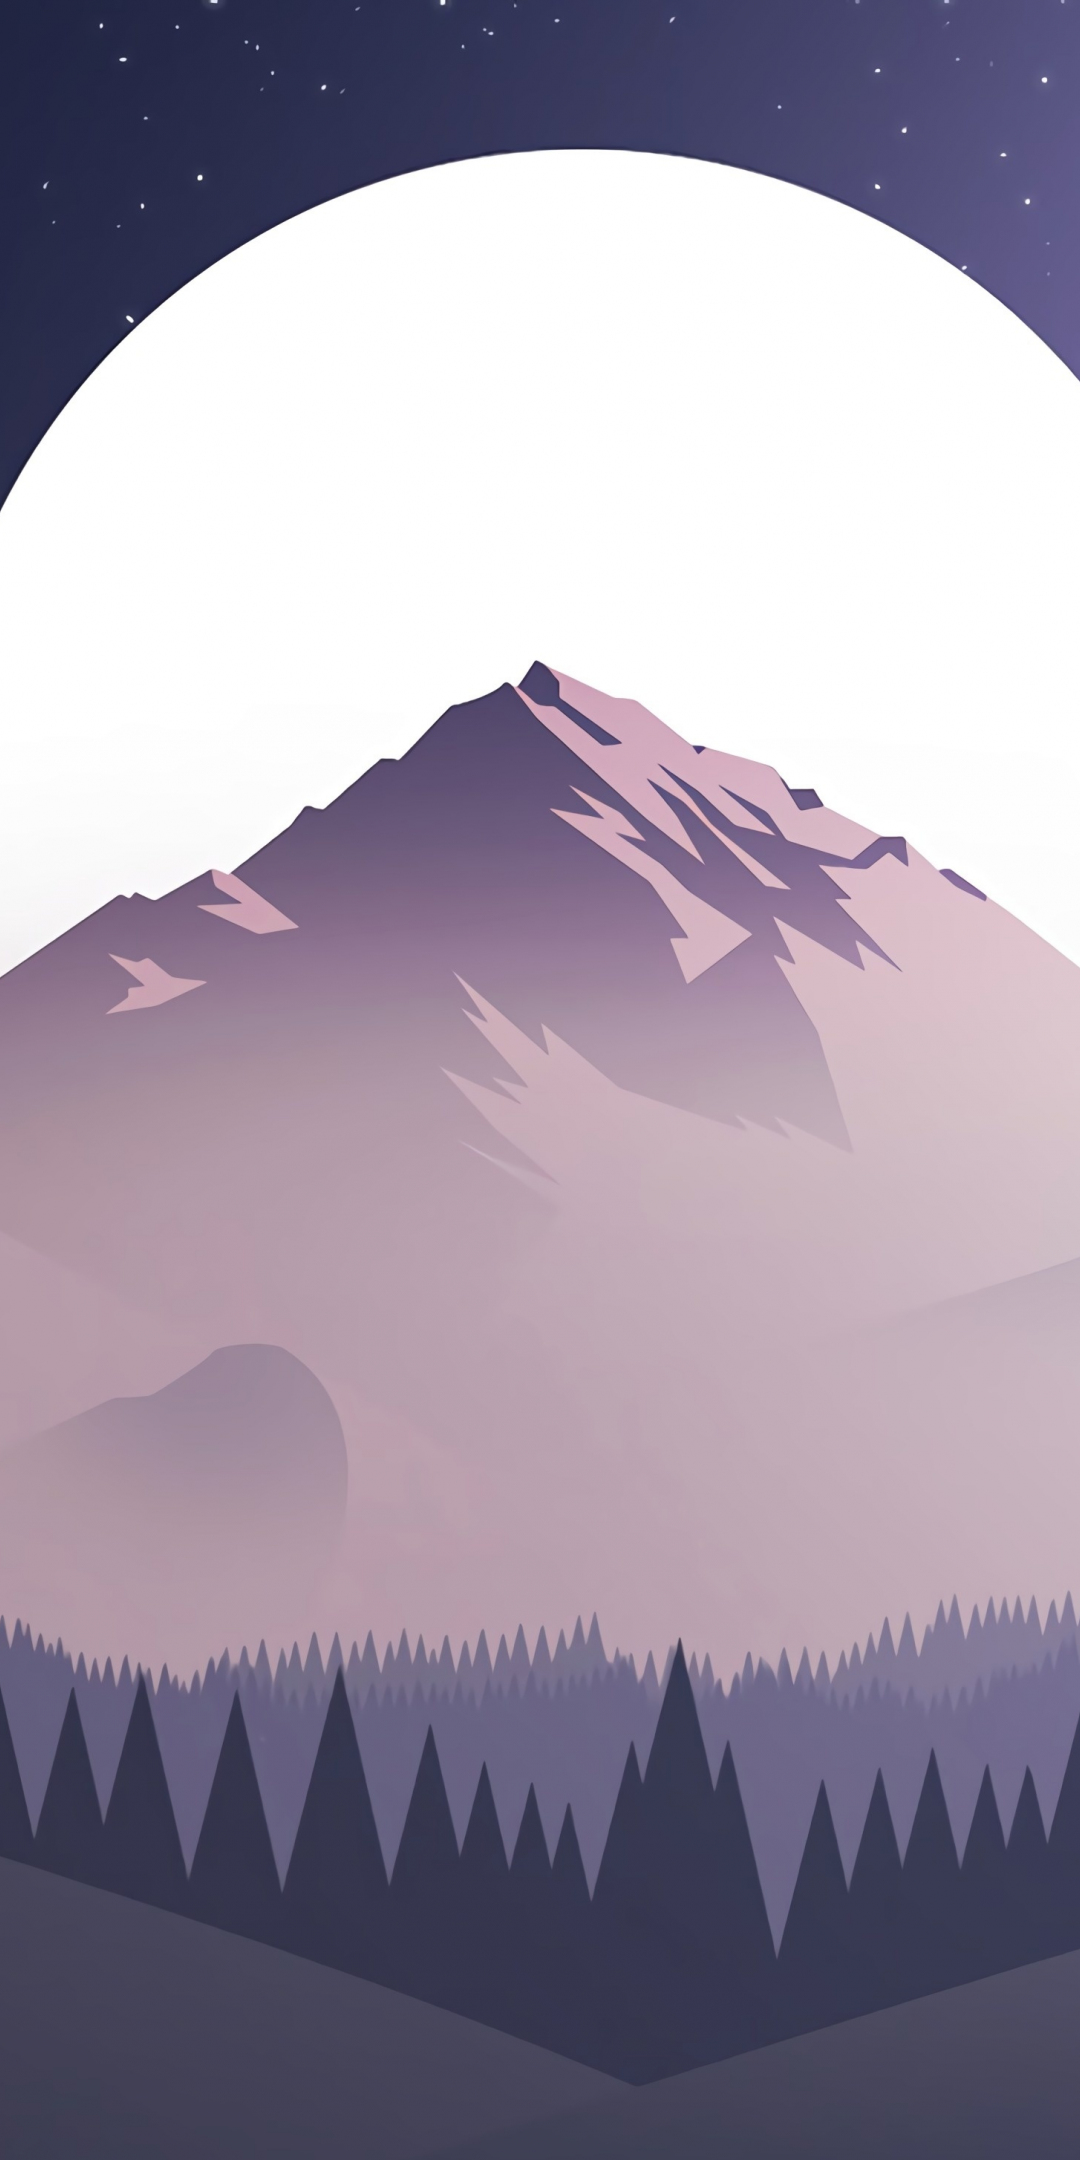 Digital art, mountains, moon, forest, 1080x2160 wallpaper